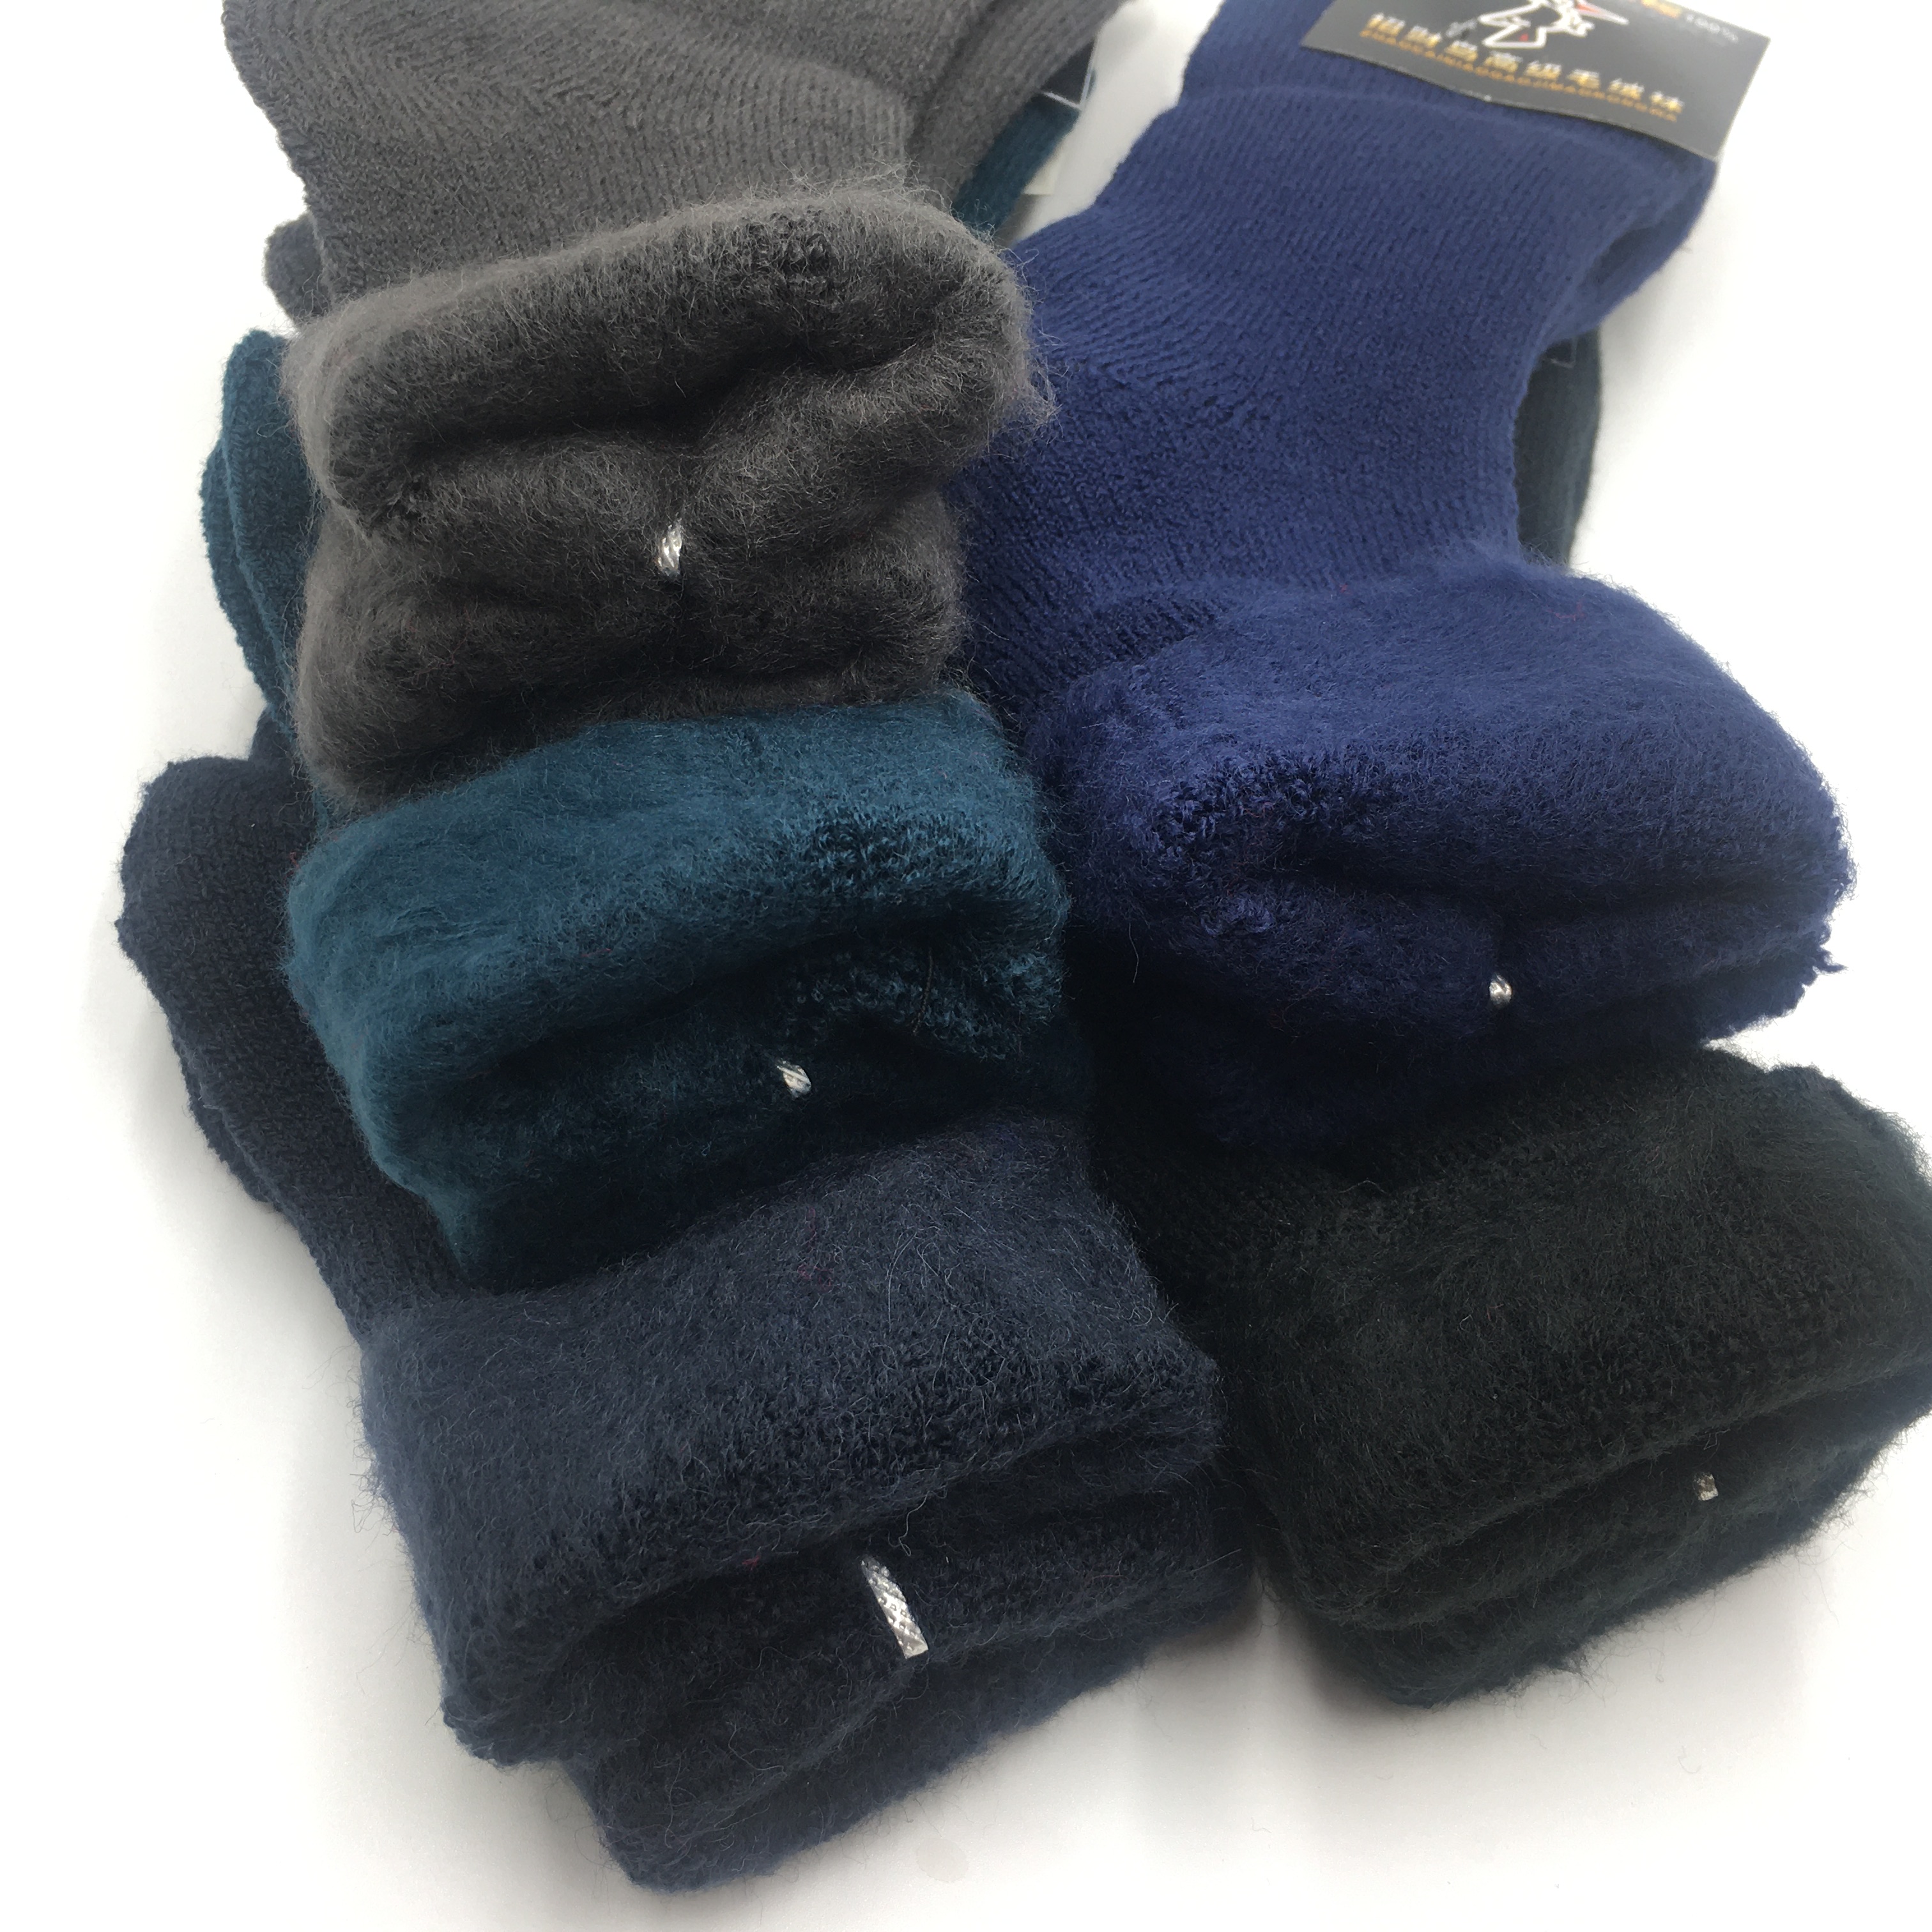 超厚羊毛袜秋冬季蓄热保暖加厚男士袜冬天加绒抗寒毛圈雪地老年袜